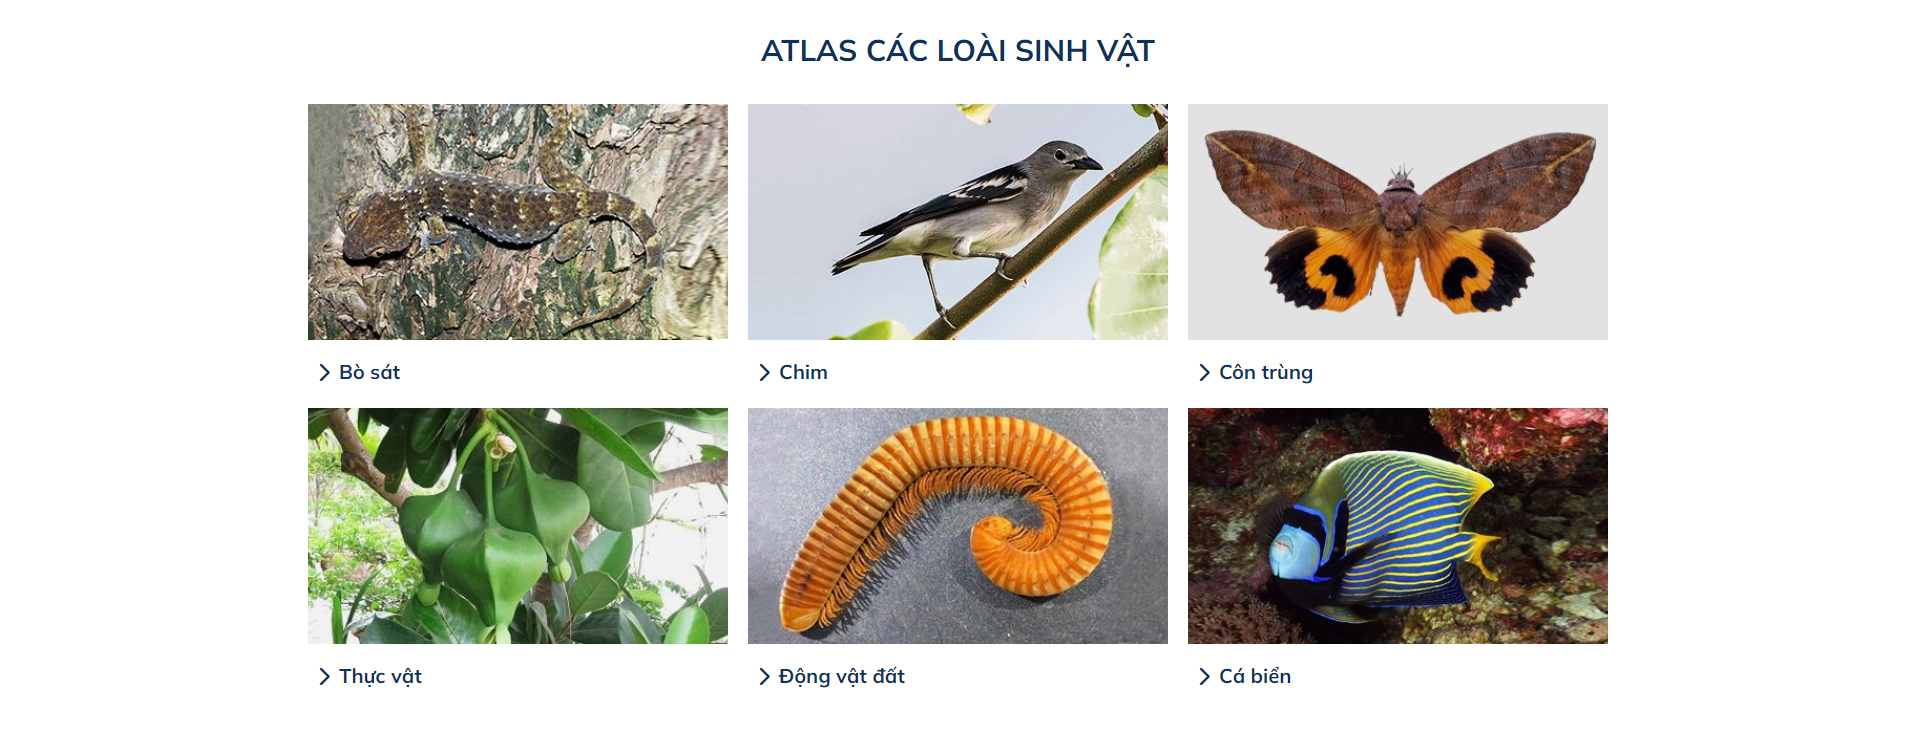 Xây dựng cơ sở dữ liệu dạng số trực tuyến trên mạng Internet (online atlas) các loài sinh vật khu vực quần đảo Trường Sa của Việt Nam